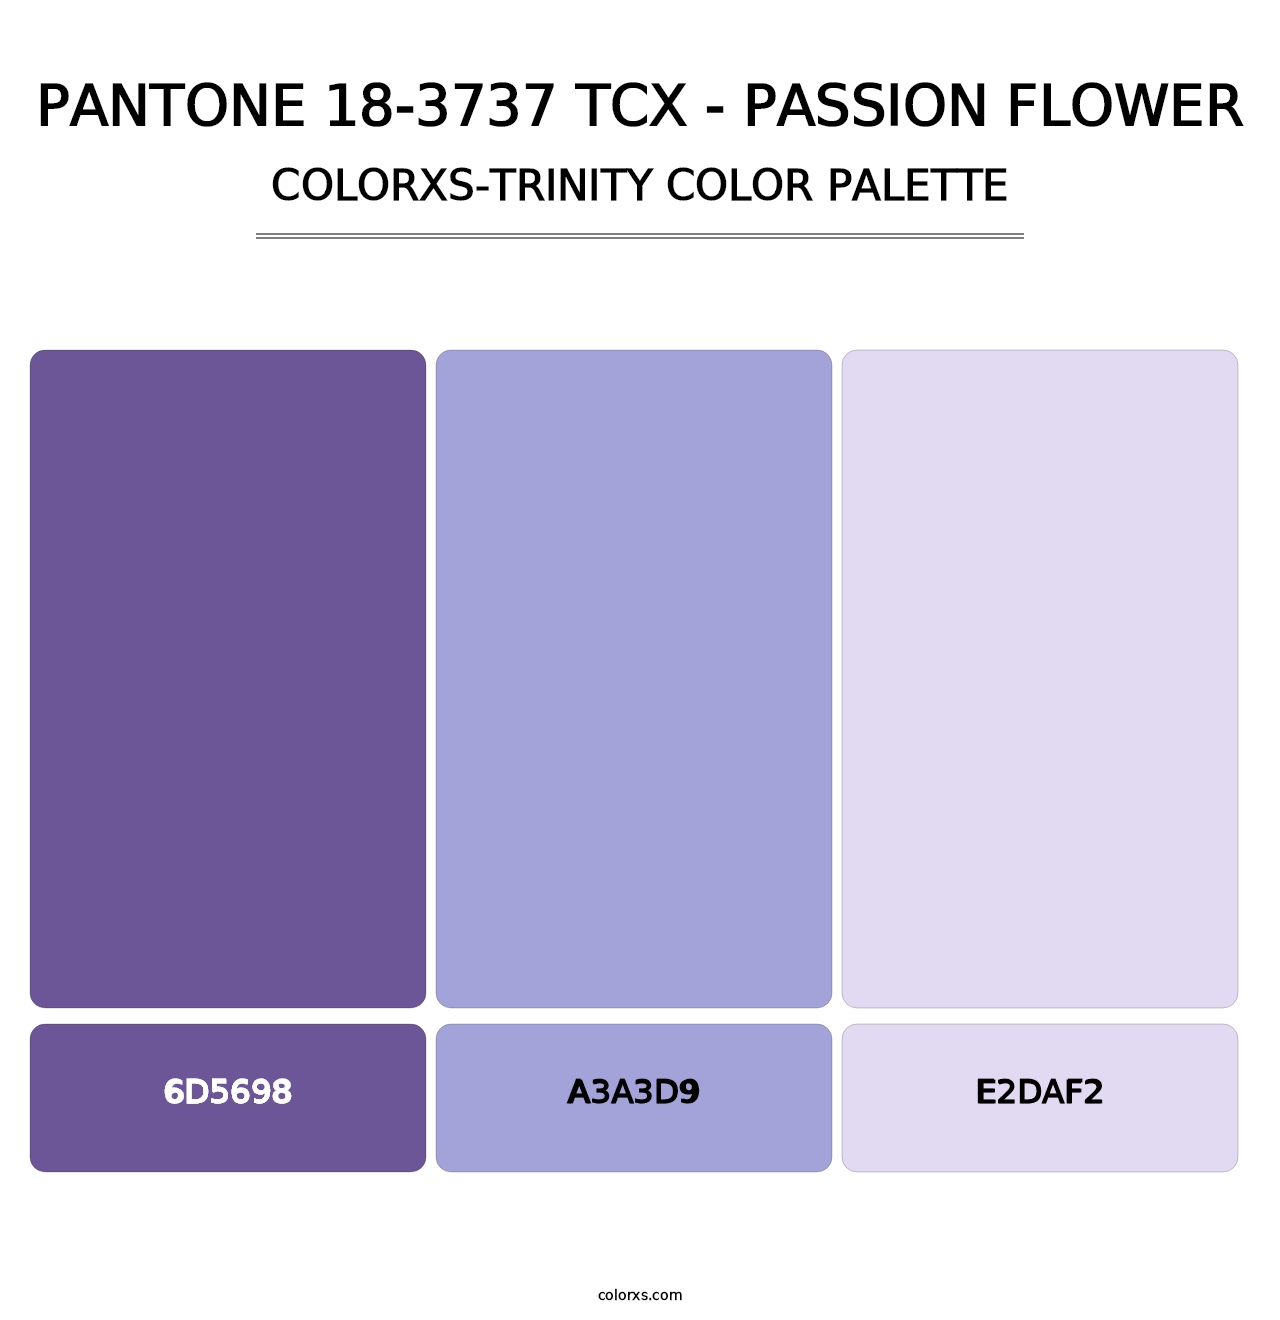 PANTONE 18-3737 TCX - Passion Flower - Colorxs Trinity Palette